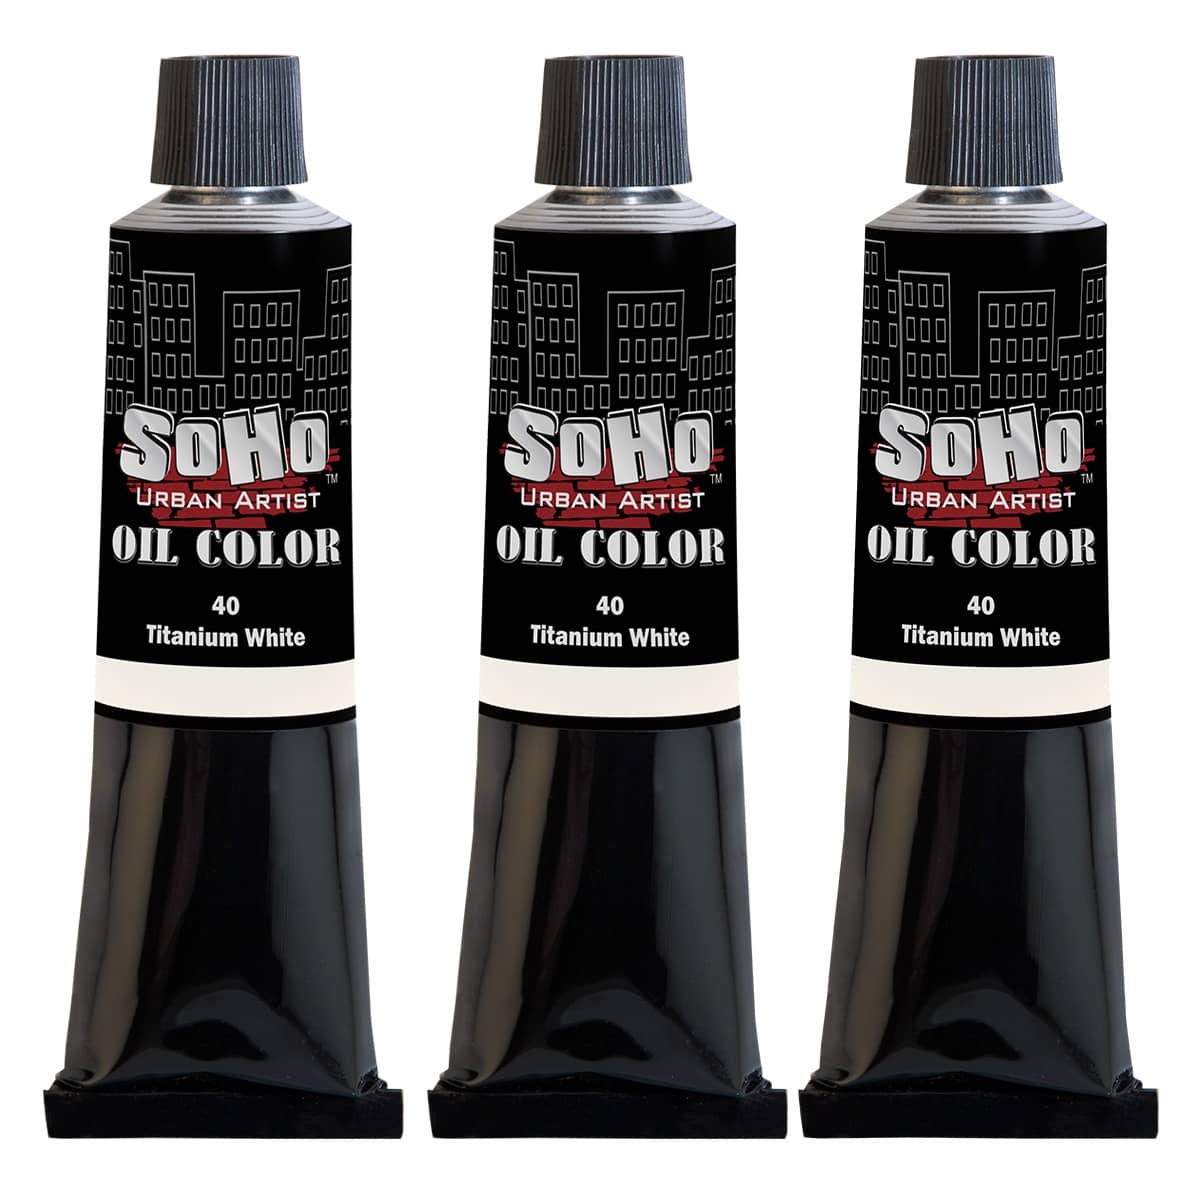 SoHo Artist Oil Color Titanium White Bonus 3 Pack, 170ml tubes